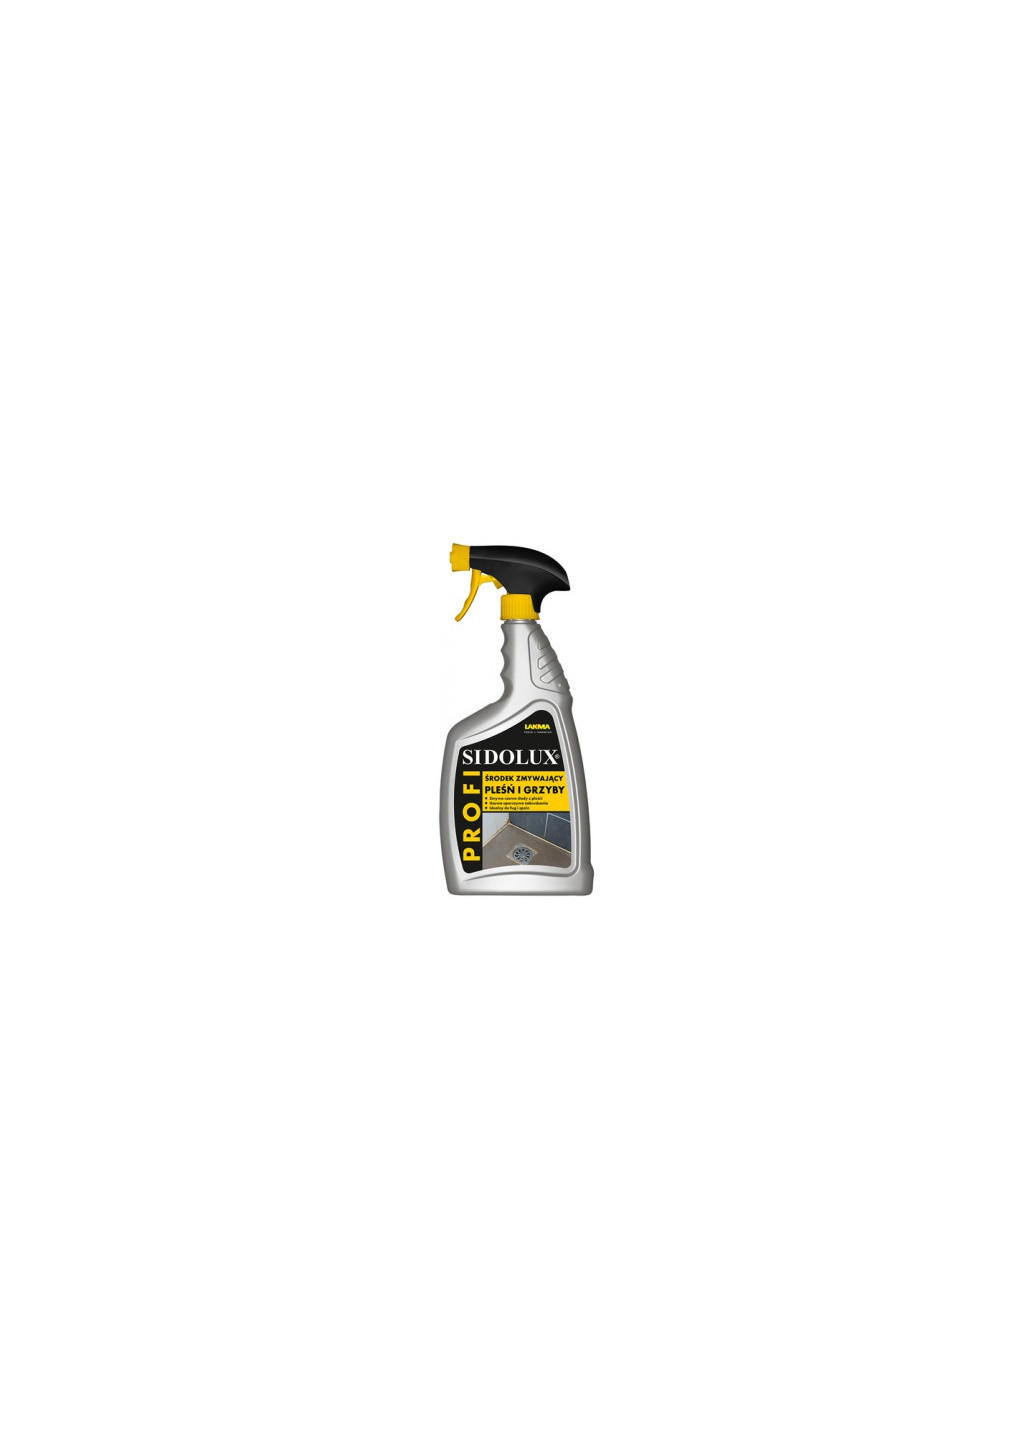 Профессиональное чистящее и дезинфицирующее средство против плесени и грибка Sidolux Profi противогрибковый очиститель (3022) Lakma (262454386)